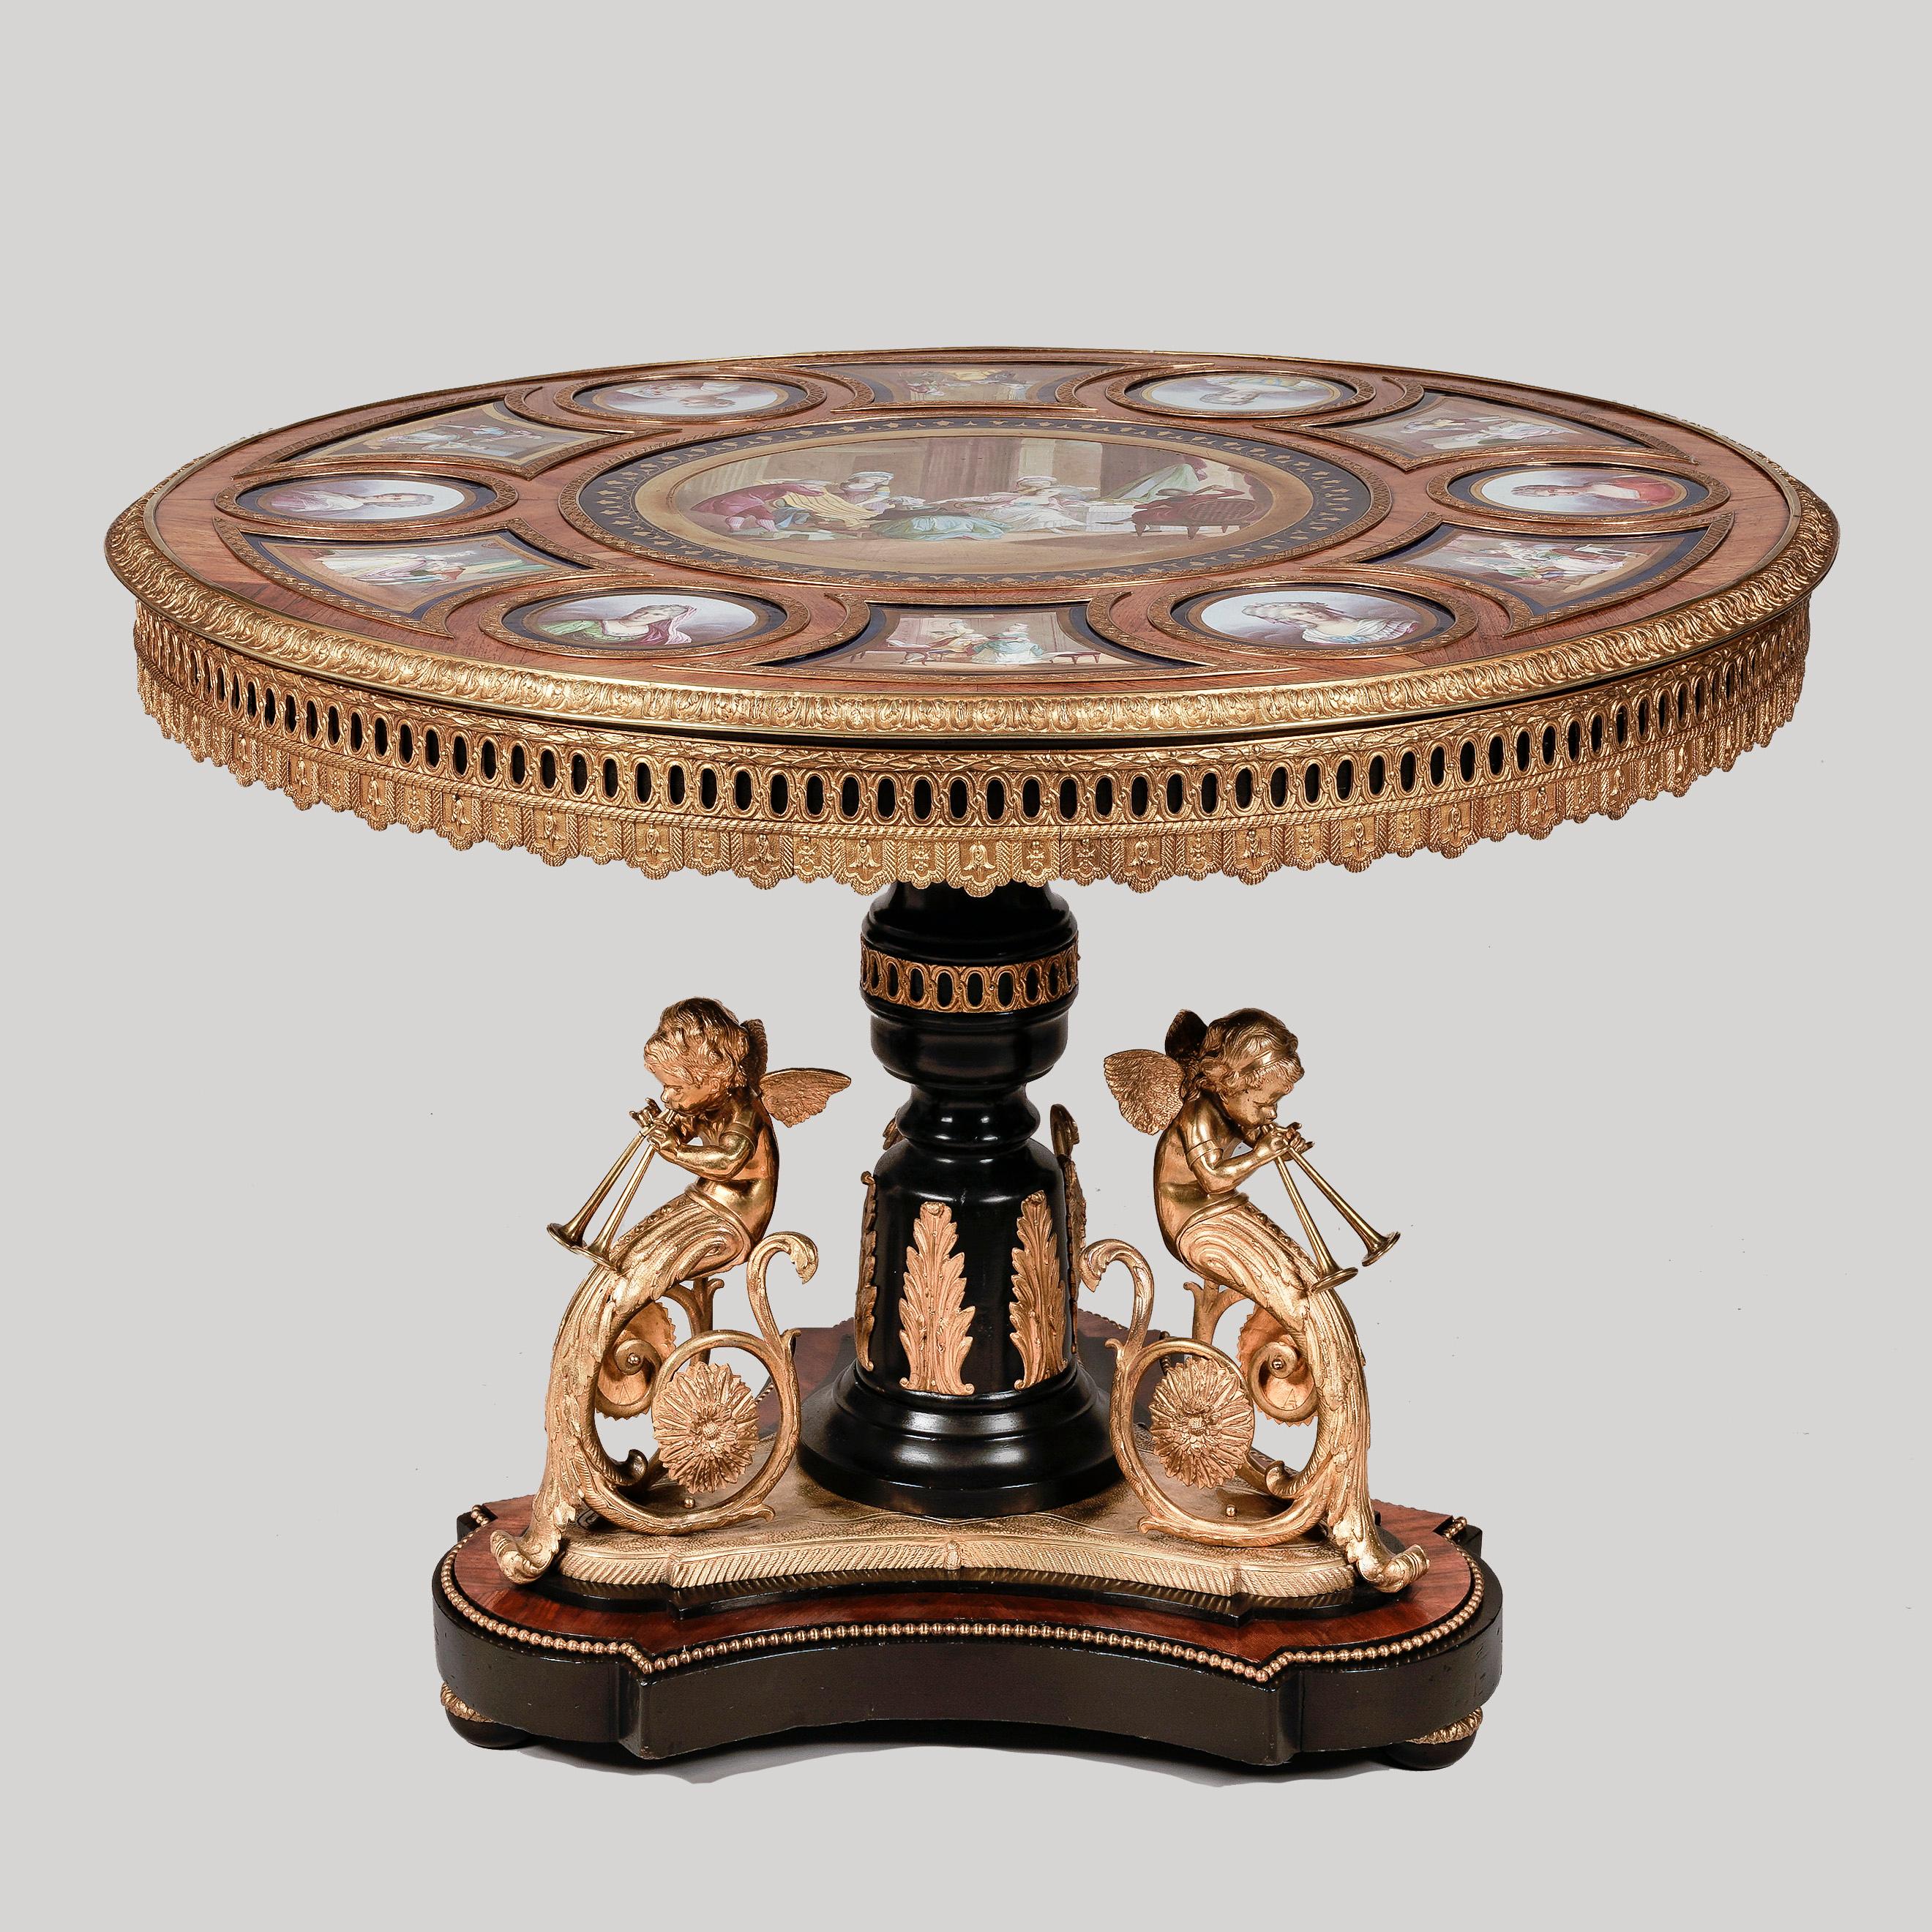 Ein hervorragender Gueridon-Mitteltisch.
mit Porzellanplatten im Sèvres-Stil.

Konstruiert aus Bois Noirci und Königsholz mit quecksilberfeuervergoldeten Ornamenten. Die zentrale Stütze erhebt sich von einem dreiteiligen Sockel auf abgeflachten